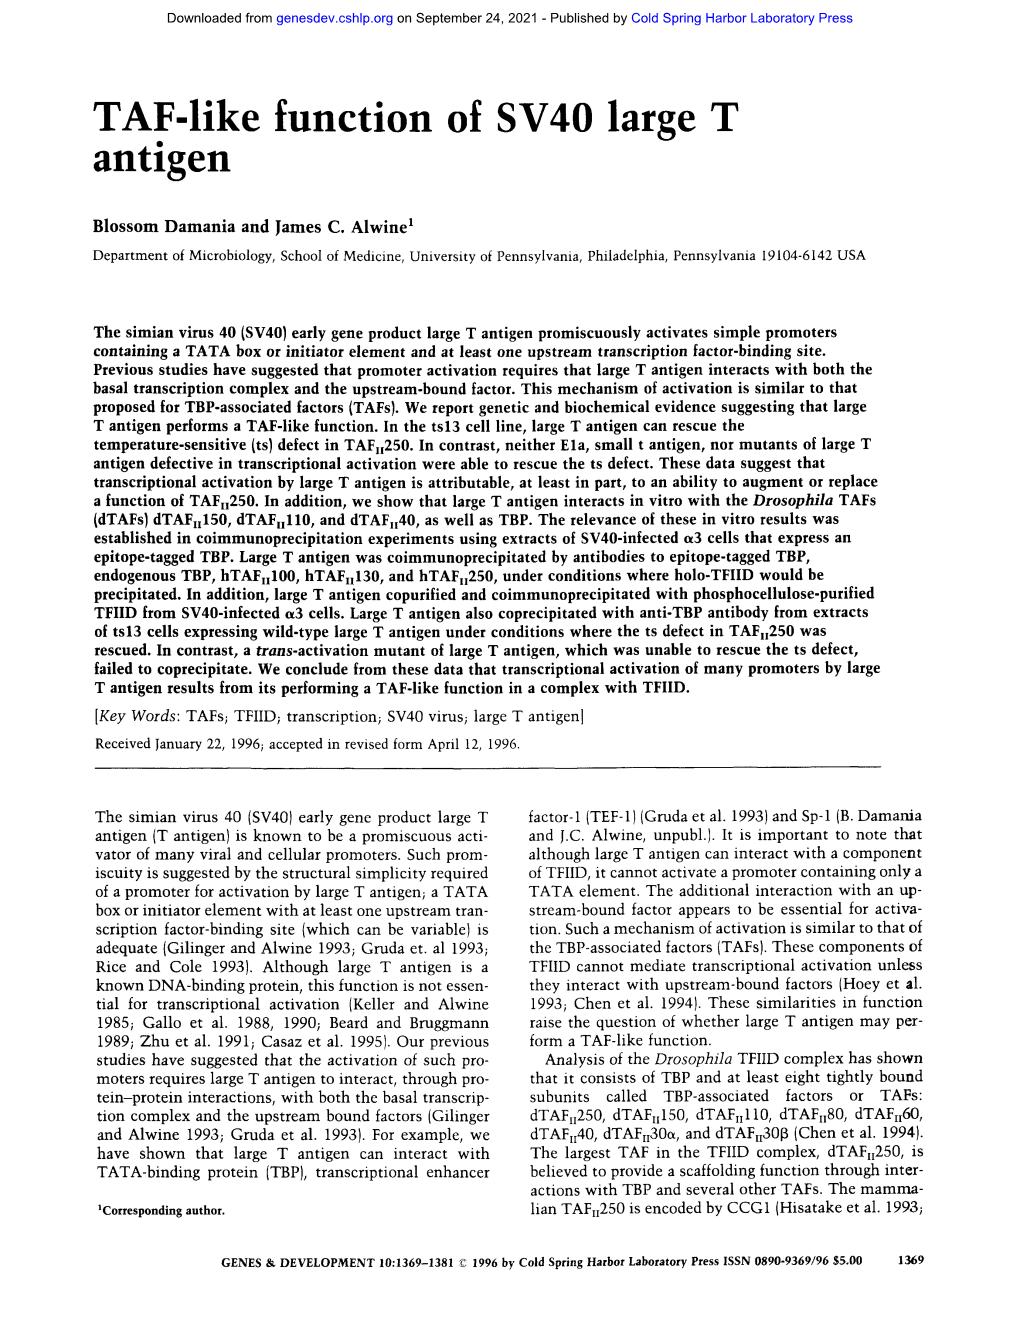 TAF-Like Function of SV40 Large T Antigen